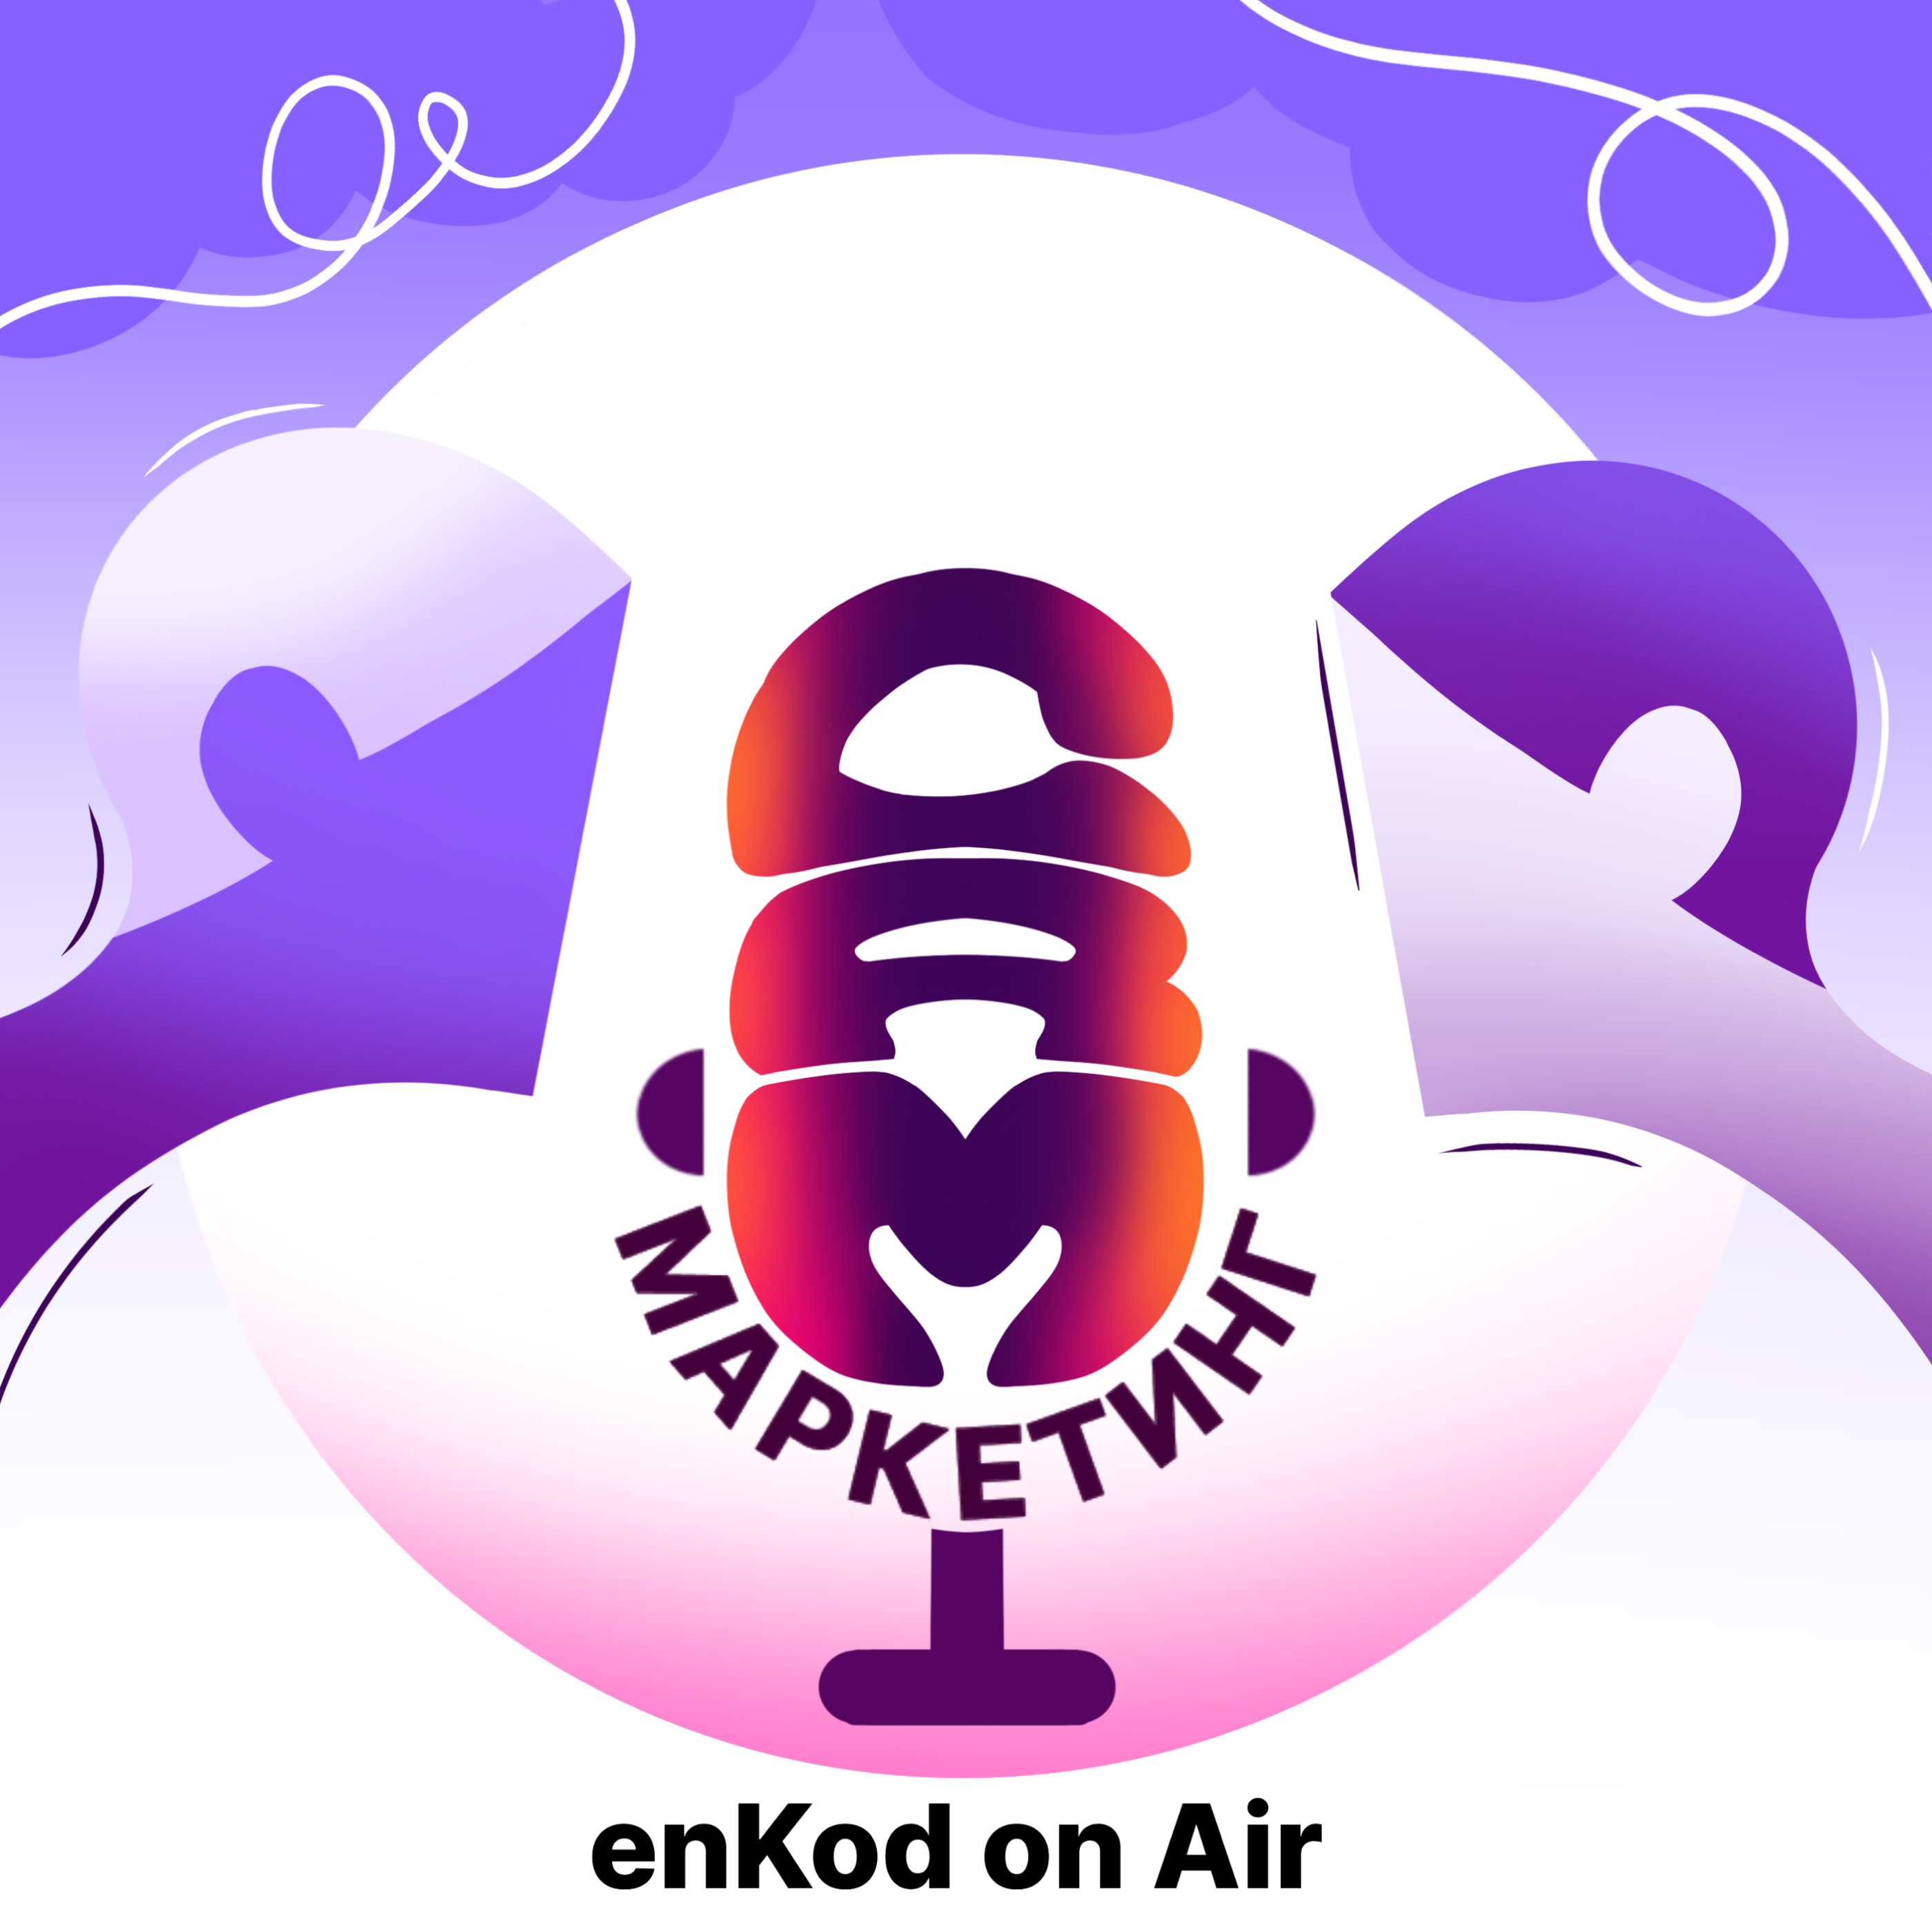 enKod в эфире: подкаст о людях в CRM-маркетинге